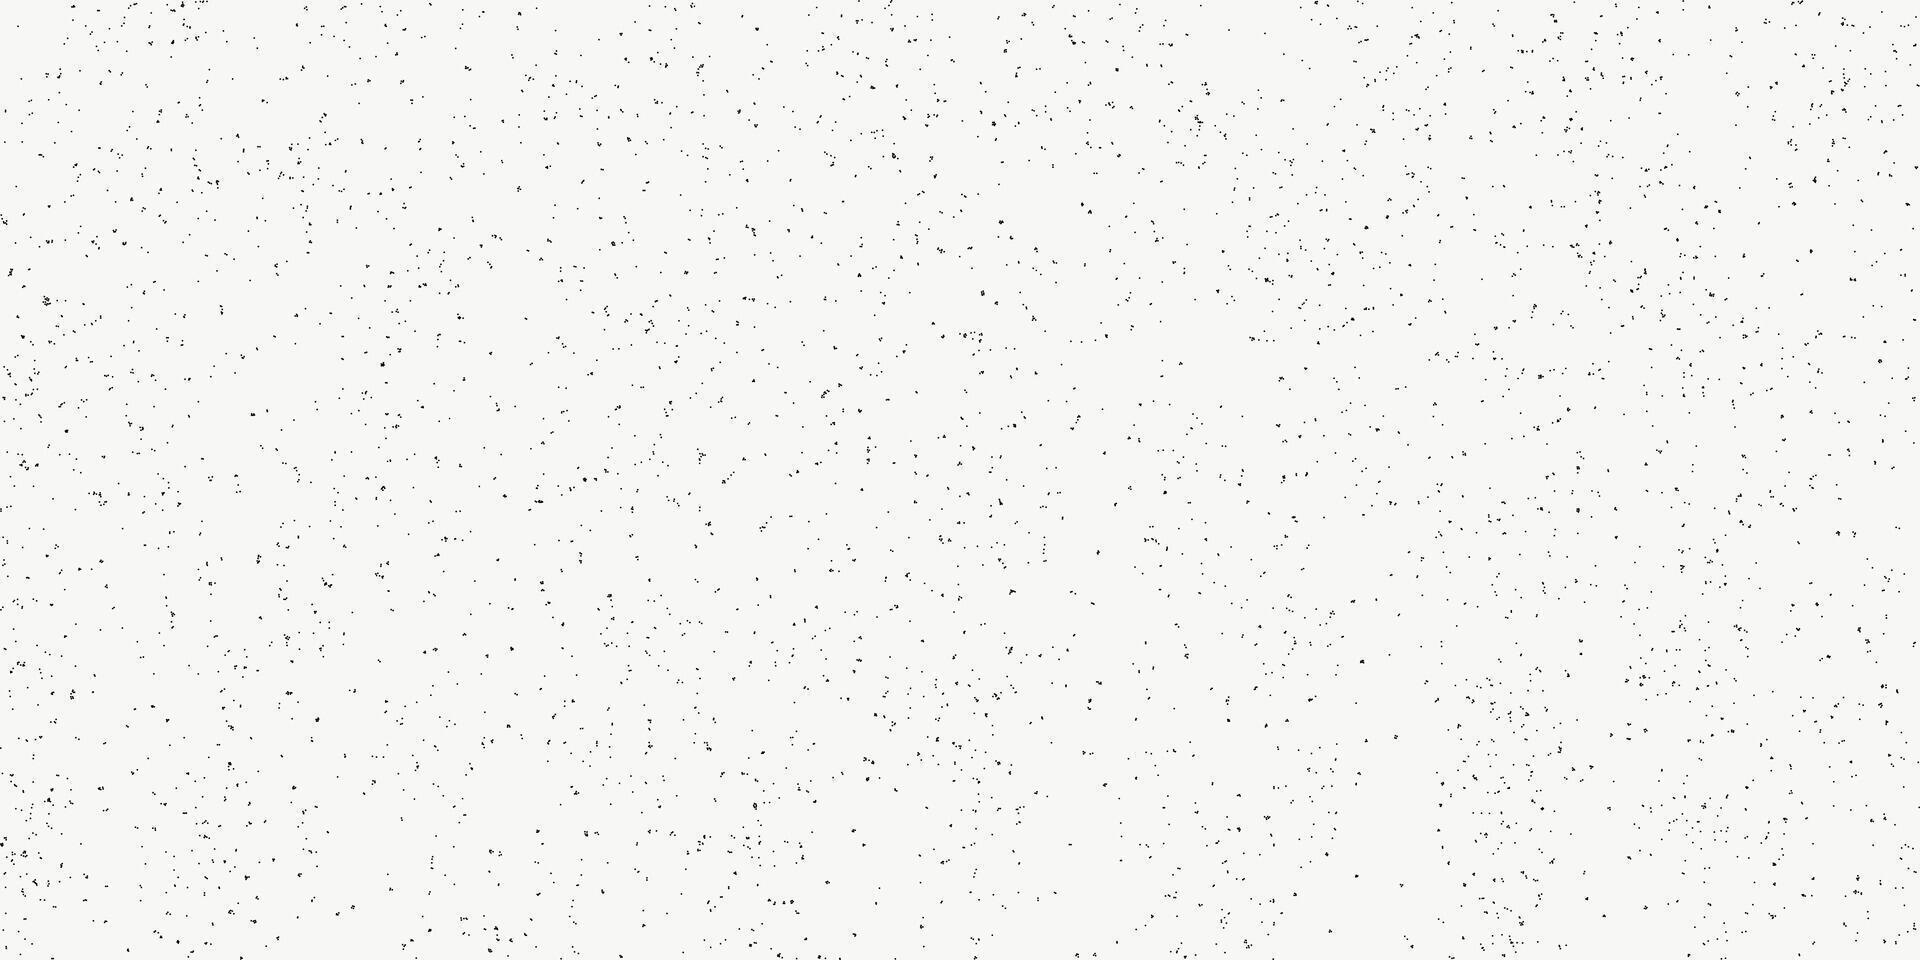 zwart stippel getextureerde achtergrond, luidruchtig zanderig dots halftone effect overlay, minimalistisch vector wijnoogst illustratie. modieus monochroom banier in grunge stijl, spuiten, klein spatten.